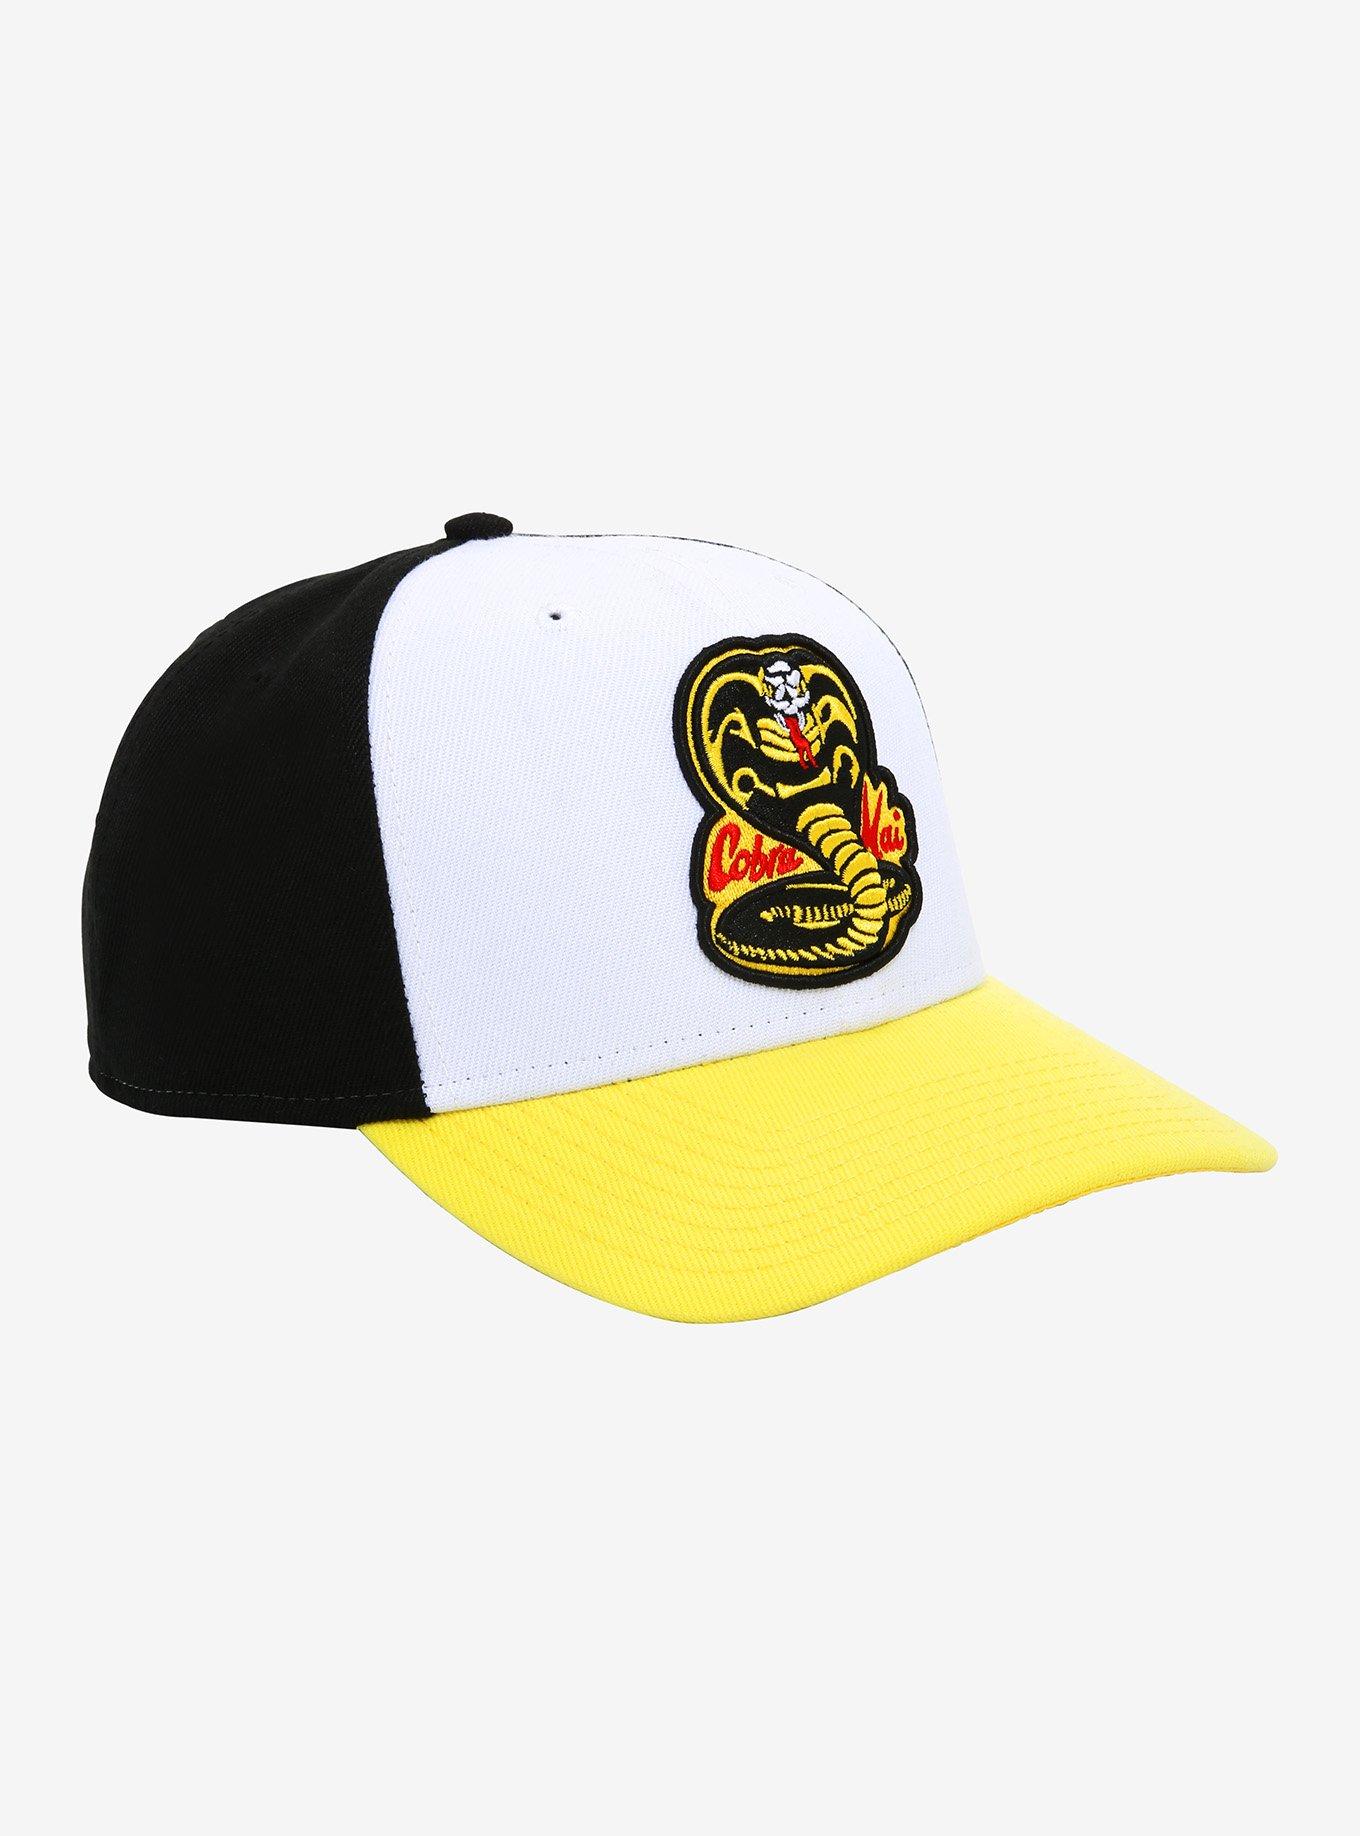 Cobra Kai No Mercy Snapback Hat, , hi-res